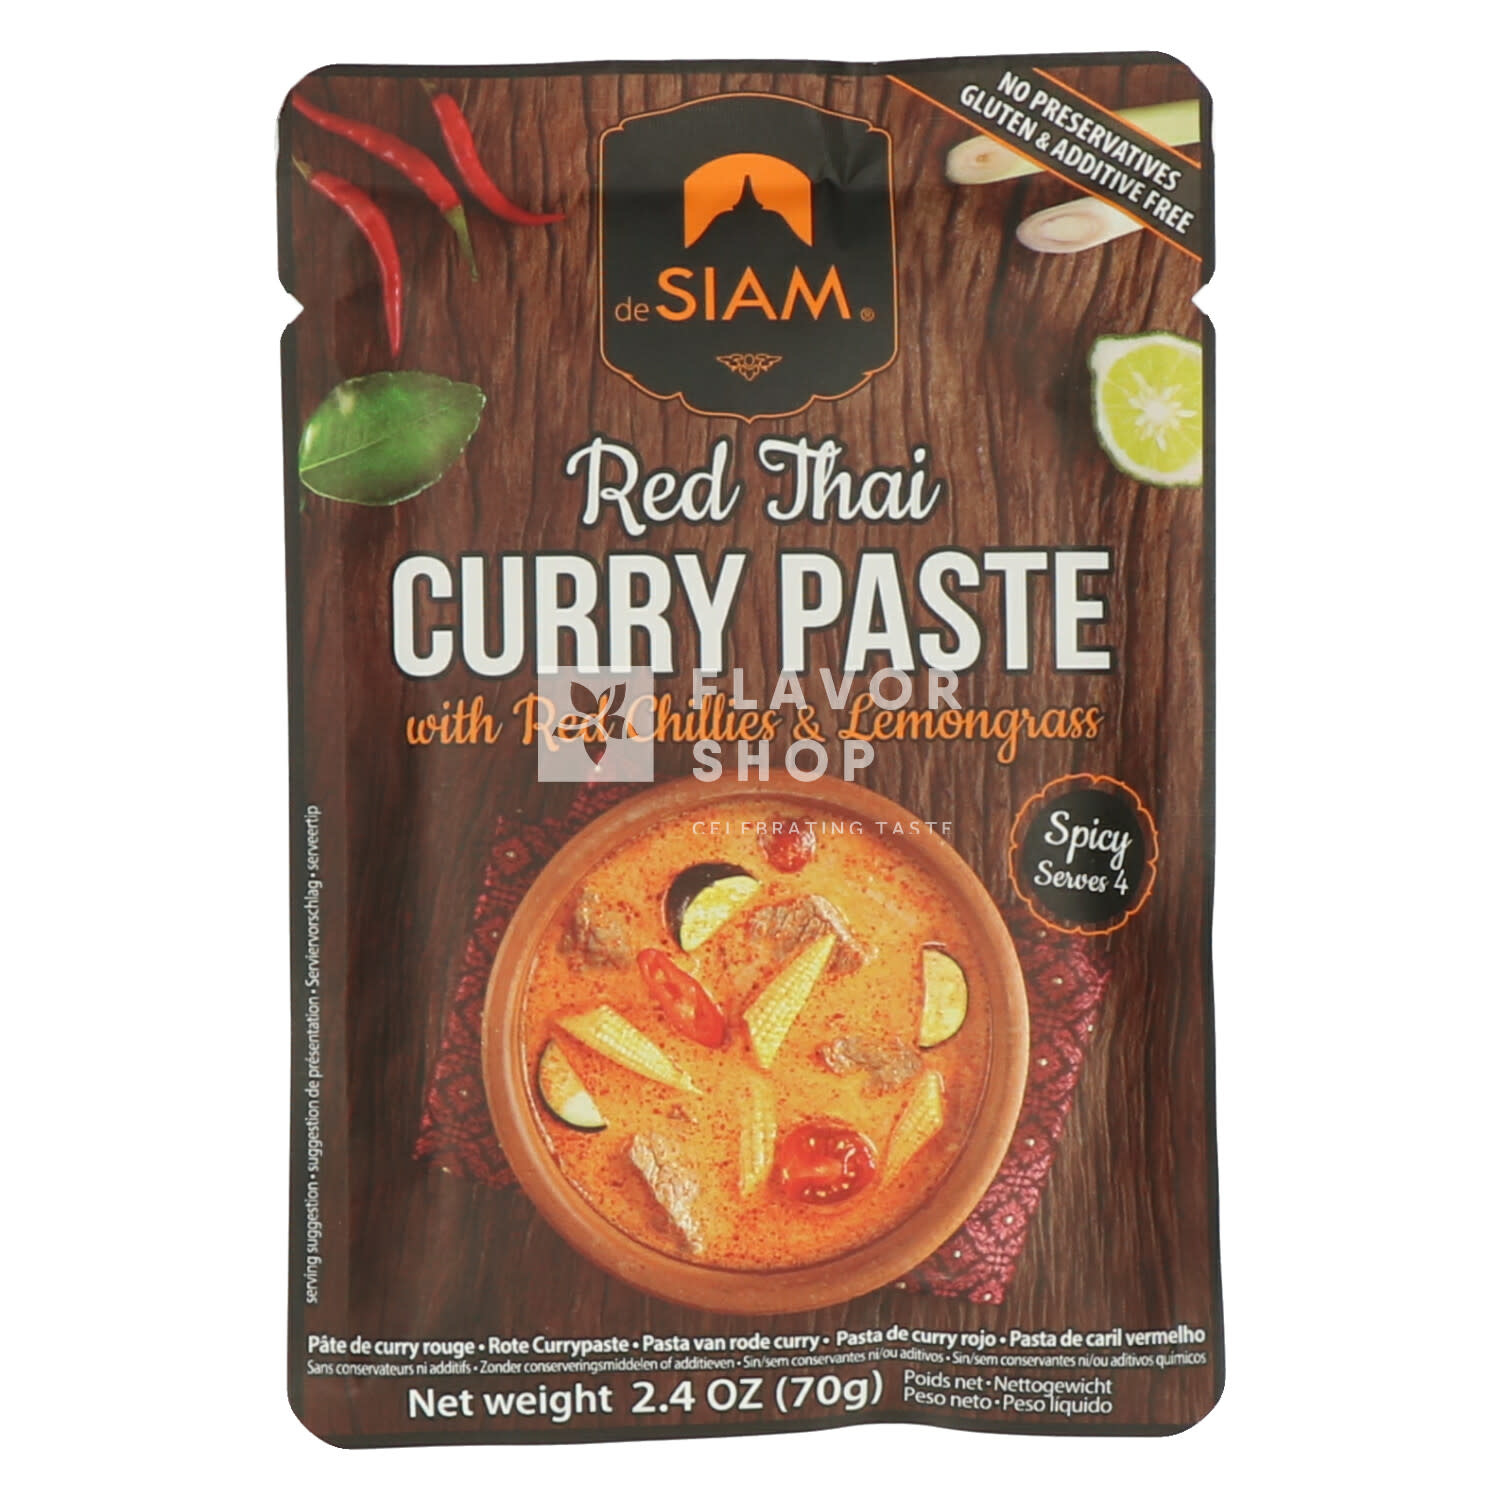 Pâte de curry rouge en sachet - Achetez-la en ligne sur Flavor Shop -  Celebrating Taste